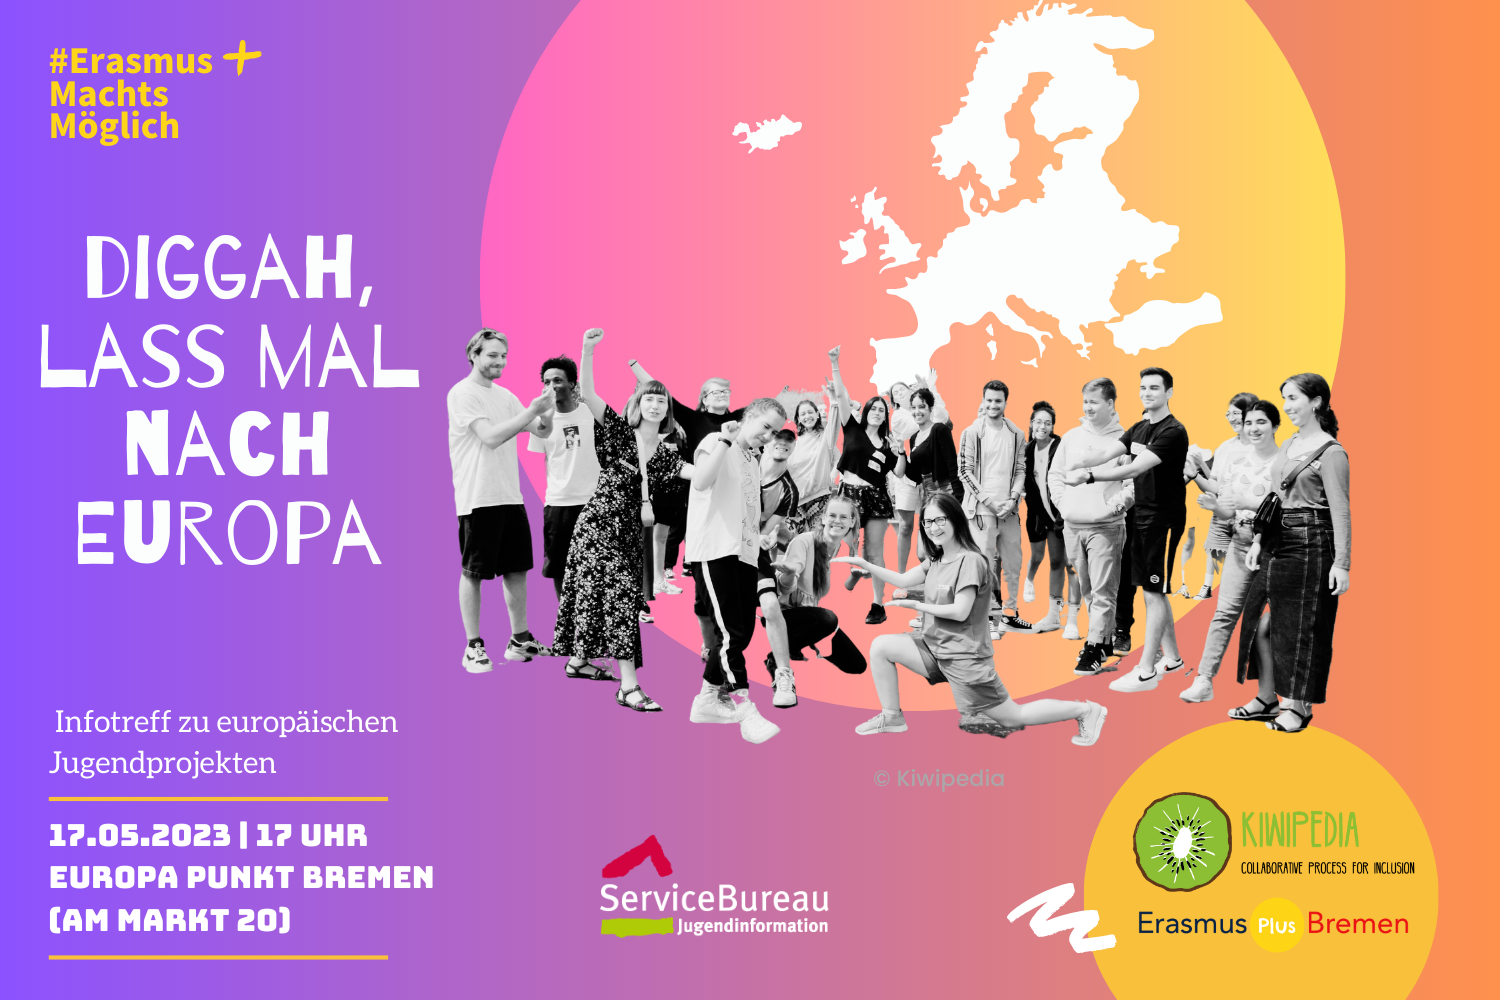 Diggah, lass mal nach Europa! - Infotreff zu europäischen Jugendprojekten